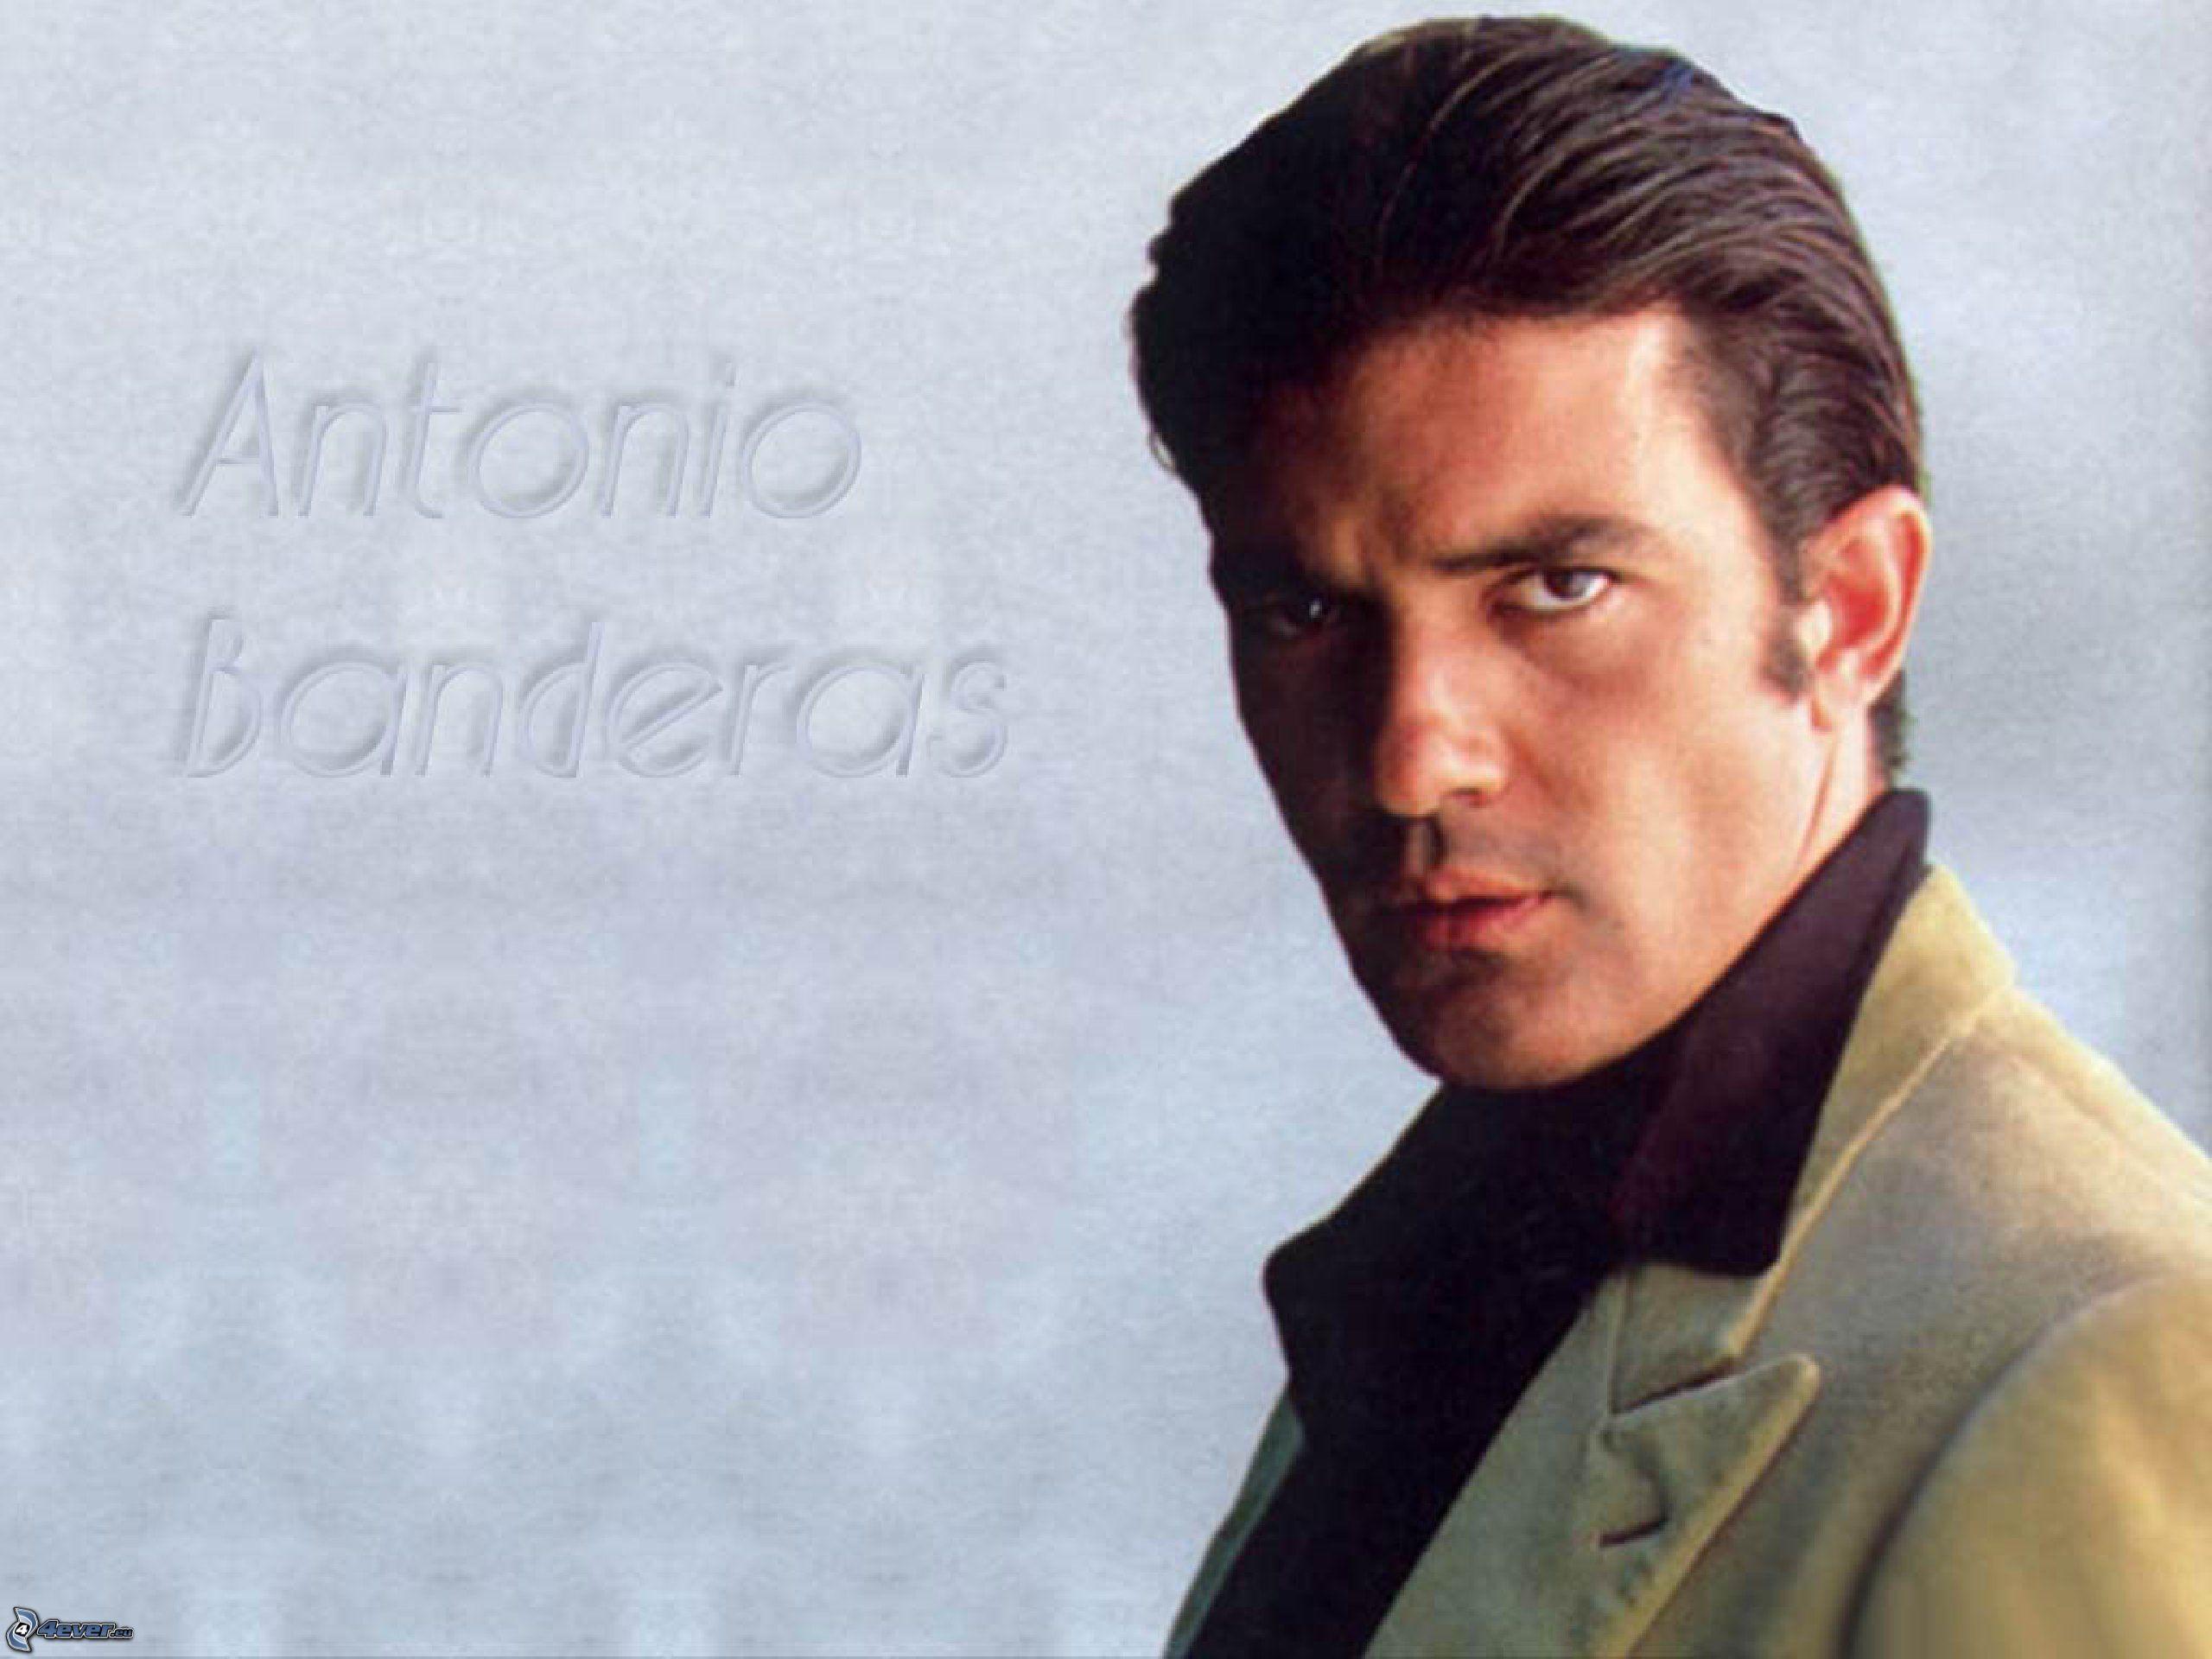 Popular Antonio Banderas wallpaper and image